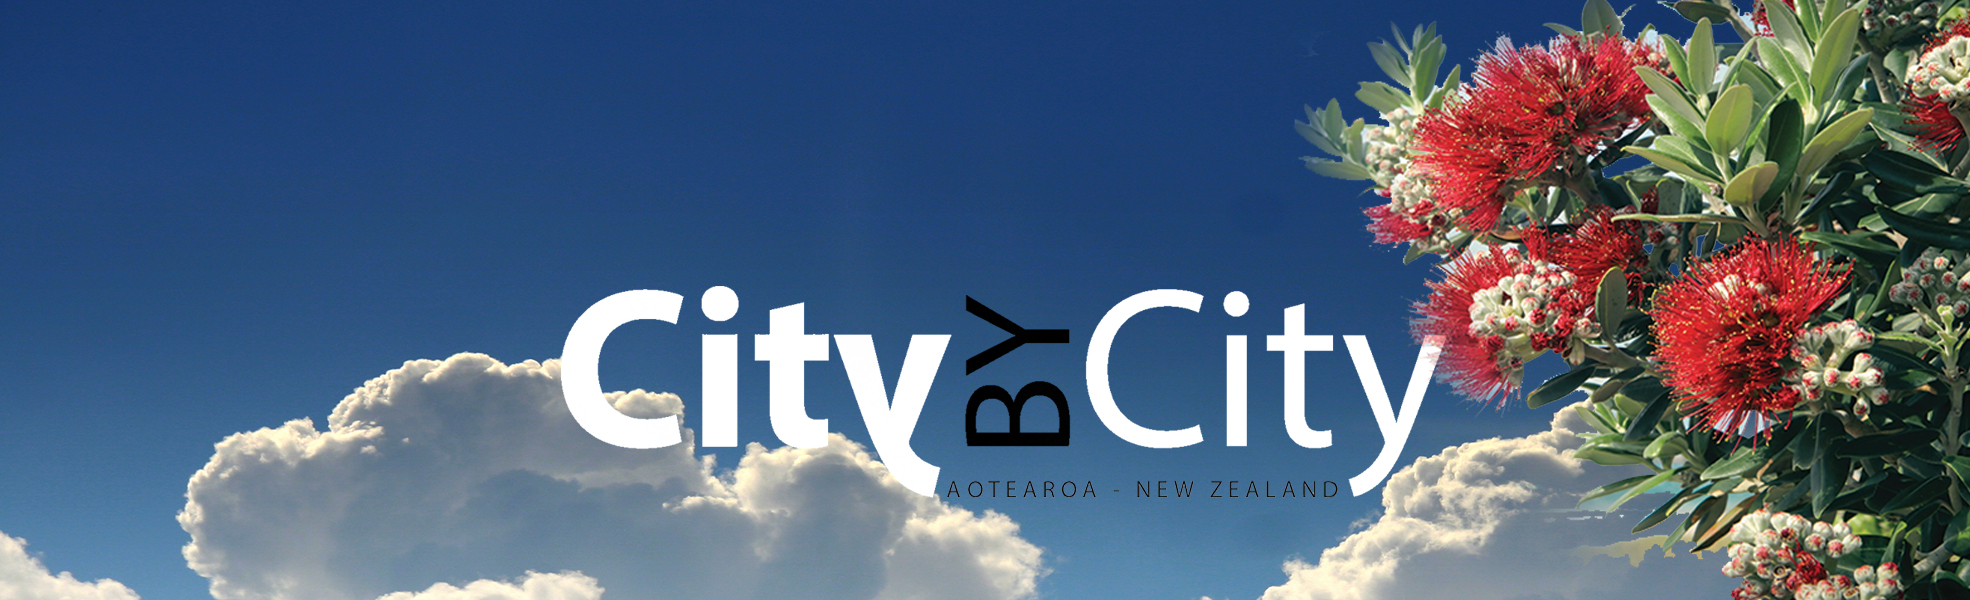 CitybyCity 1970x600 clouds Pohutakawa4